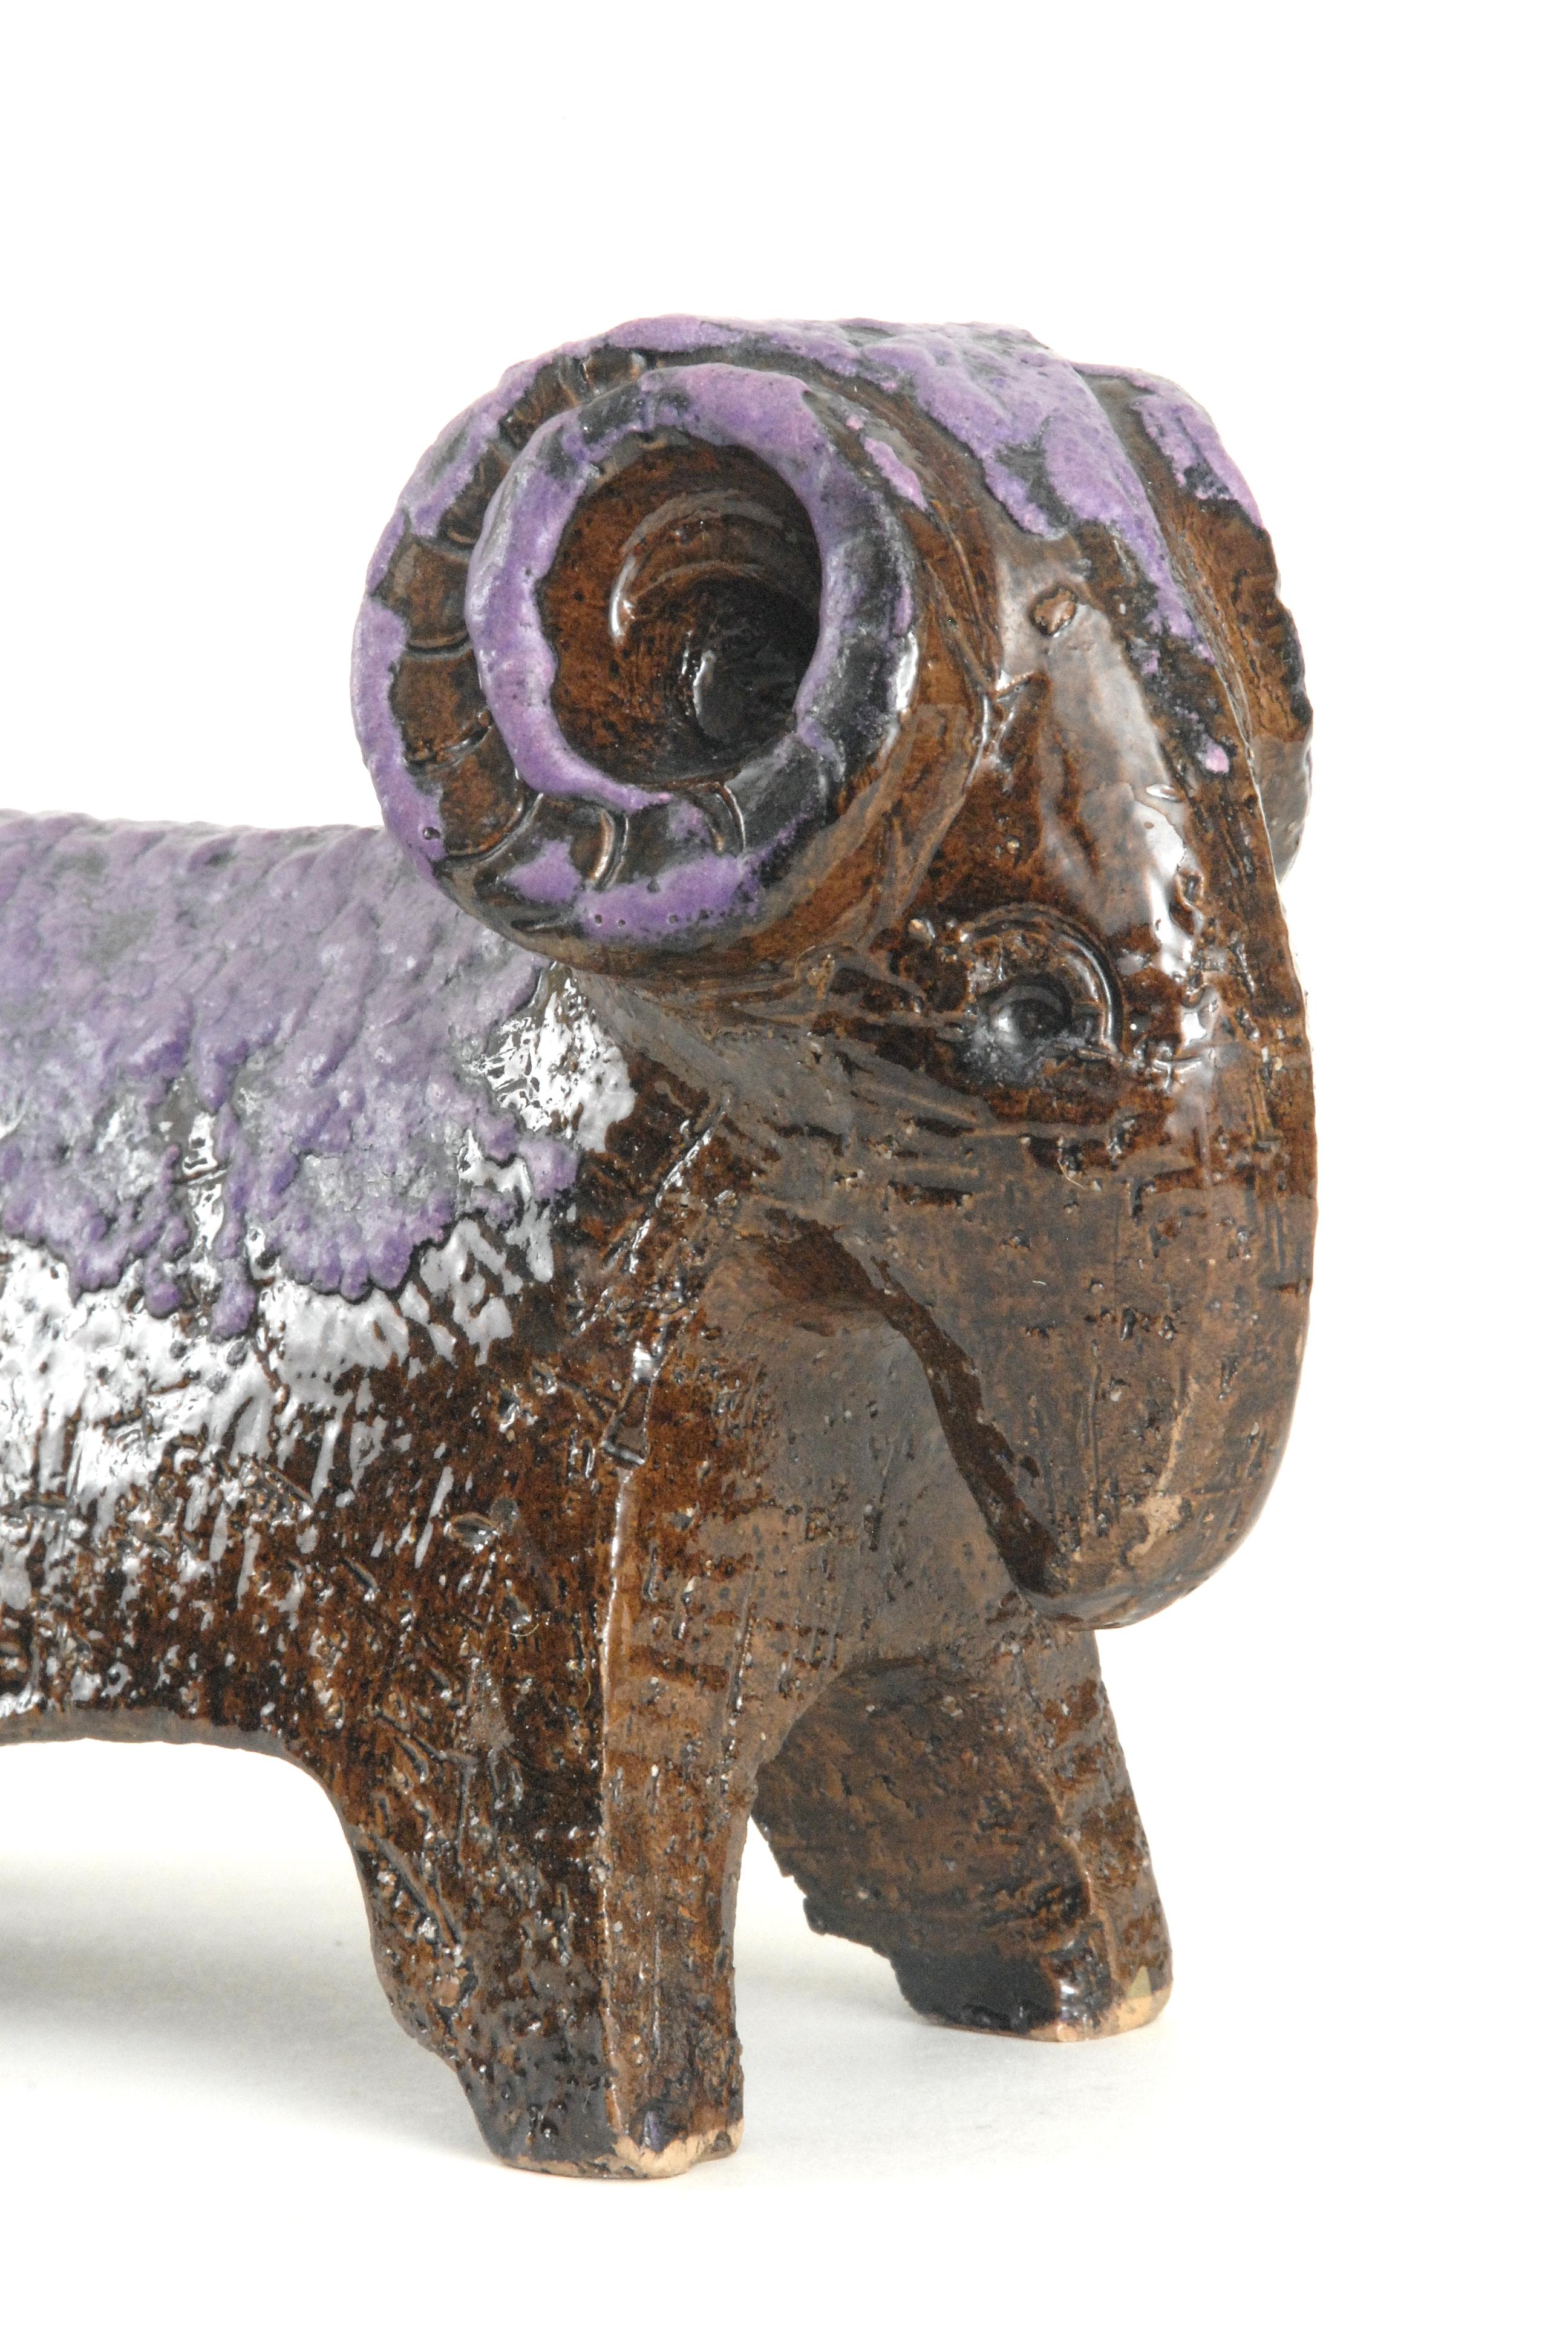 Un petit bélier conçu par Aldo Londi pour Bitossi avec une glaçure violette mousseuse sur un corps brillant brun manganèse. Non marqué.